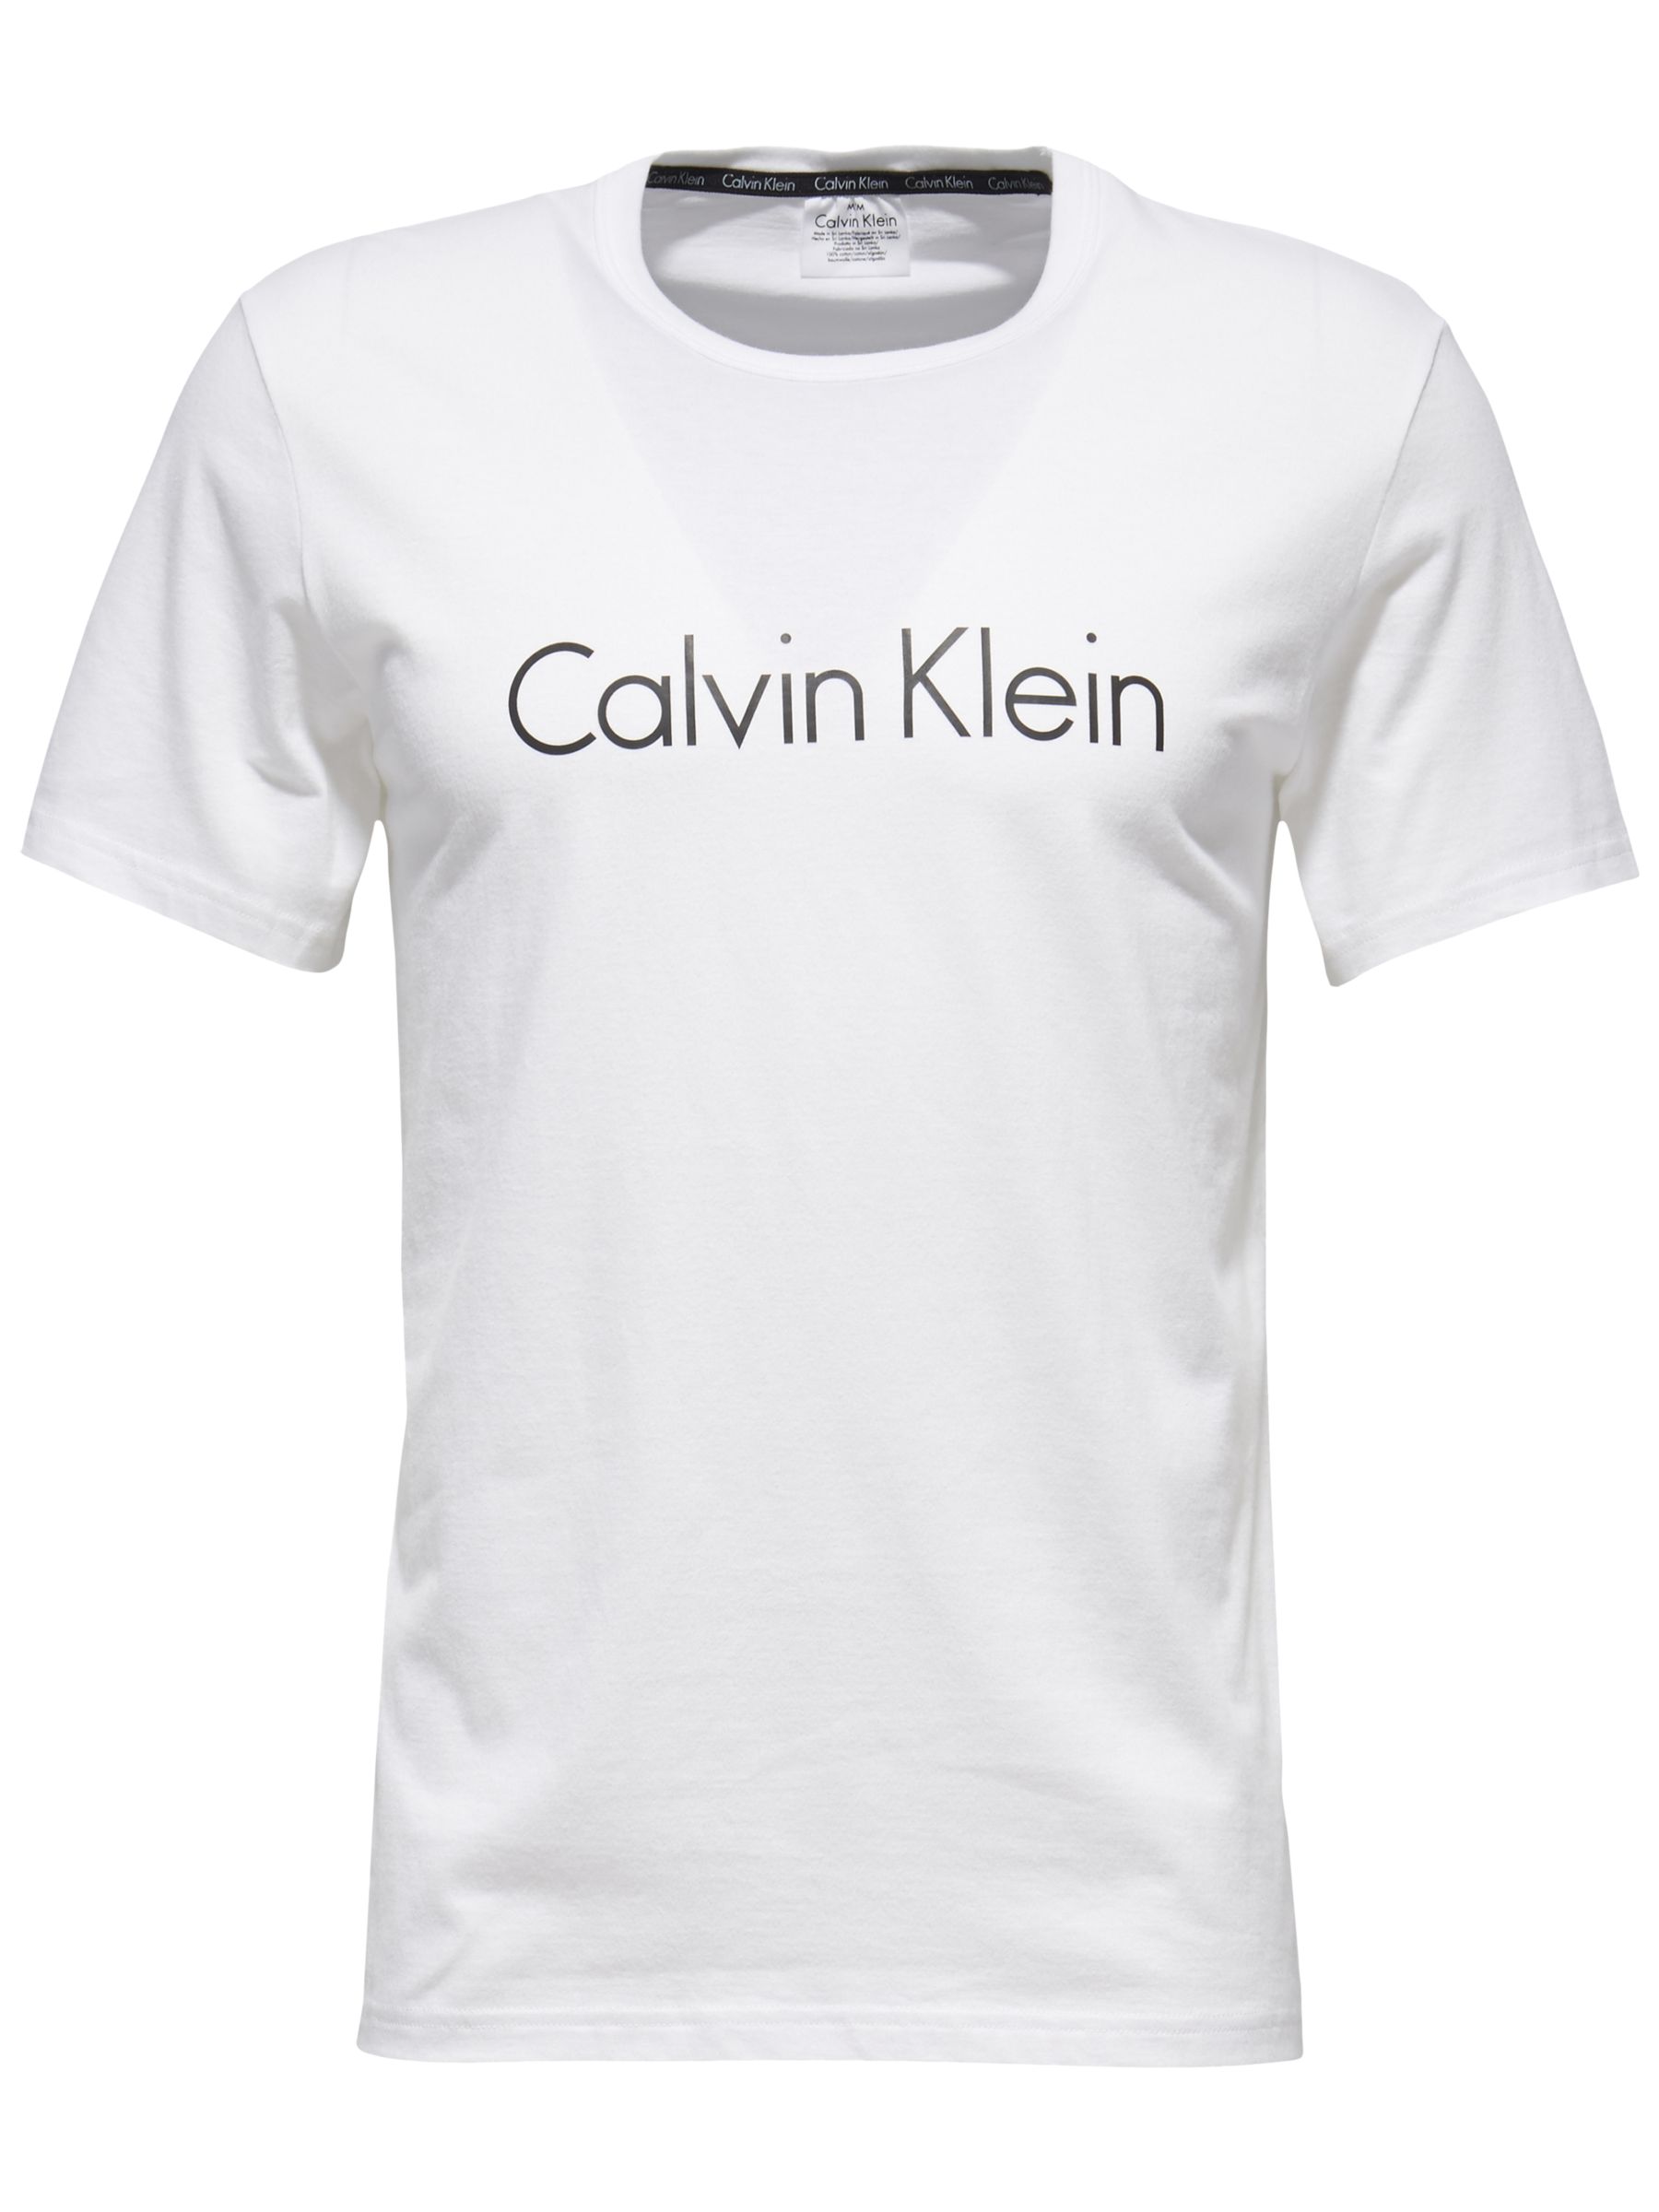 calvin klein tee shirts